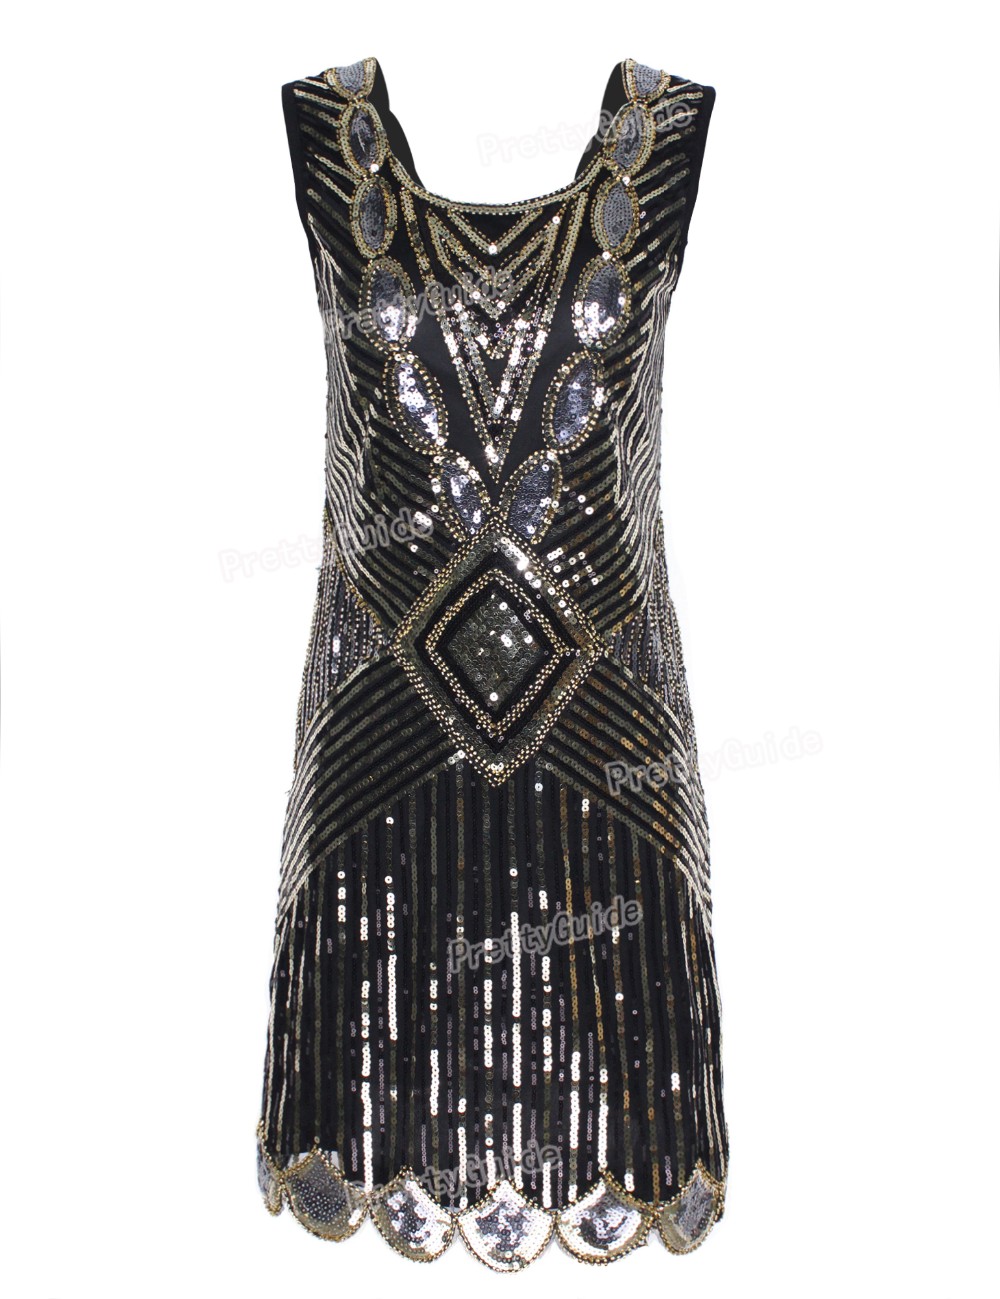 PrettyGuide-Women-1920s-Gatsby-Sequin-Art-Deco-Scalloped-Hem-Deep-V-Back-Inspired-Flapper-Dress-Roar-32575752975